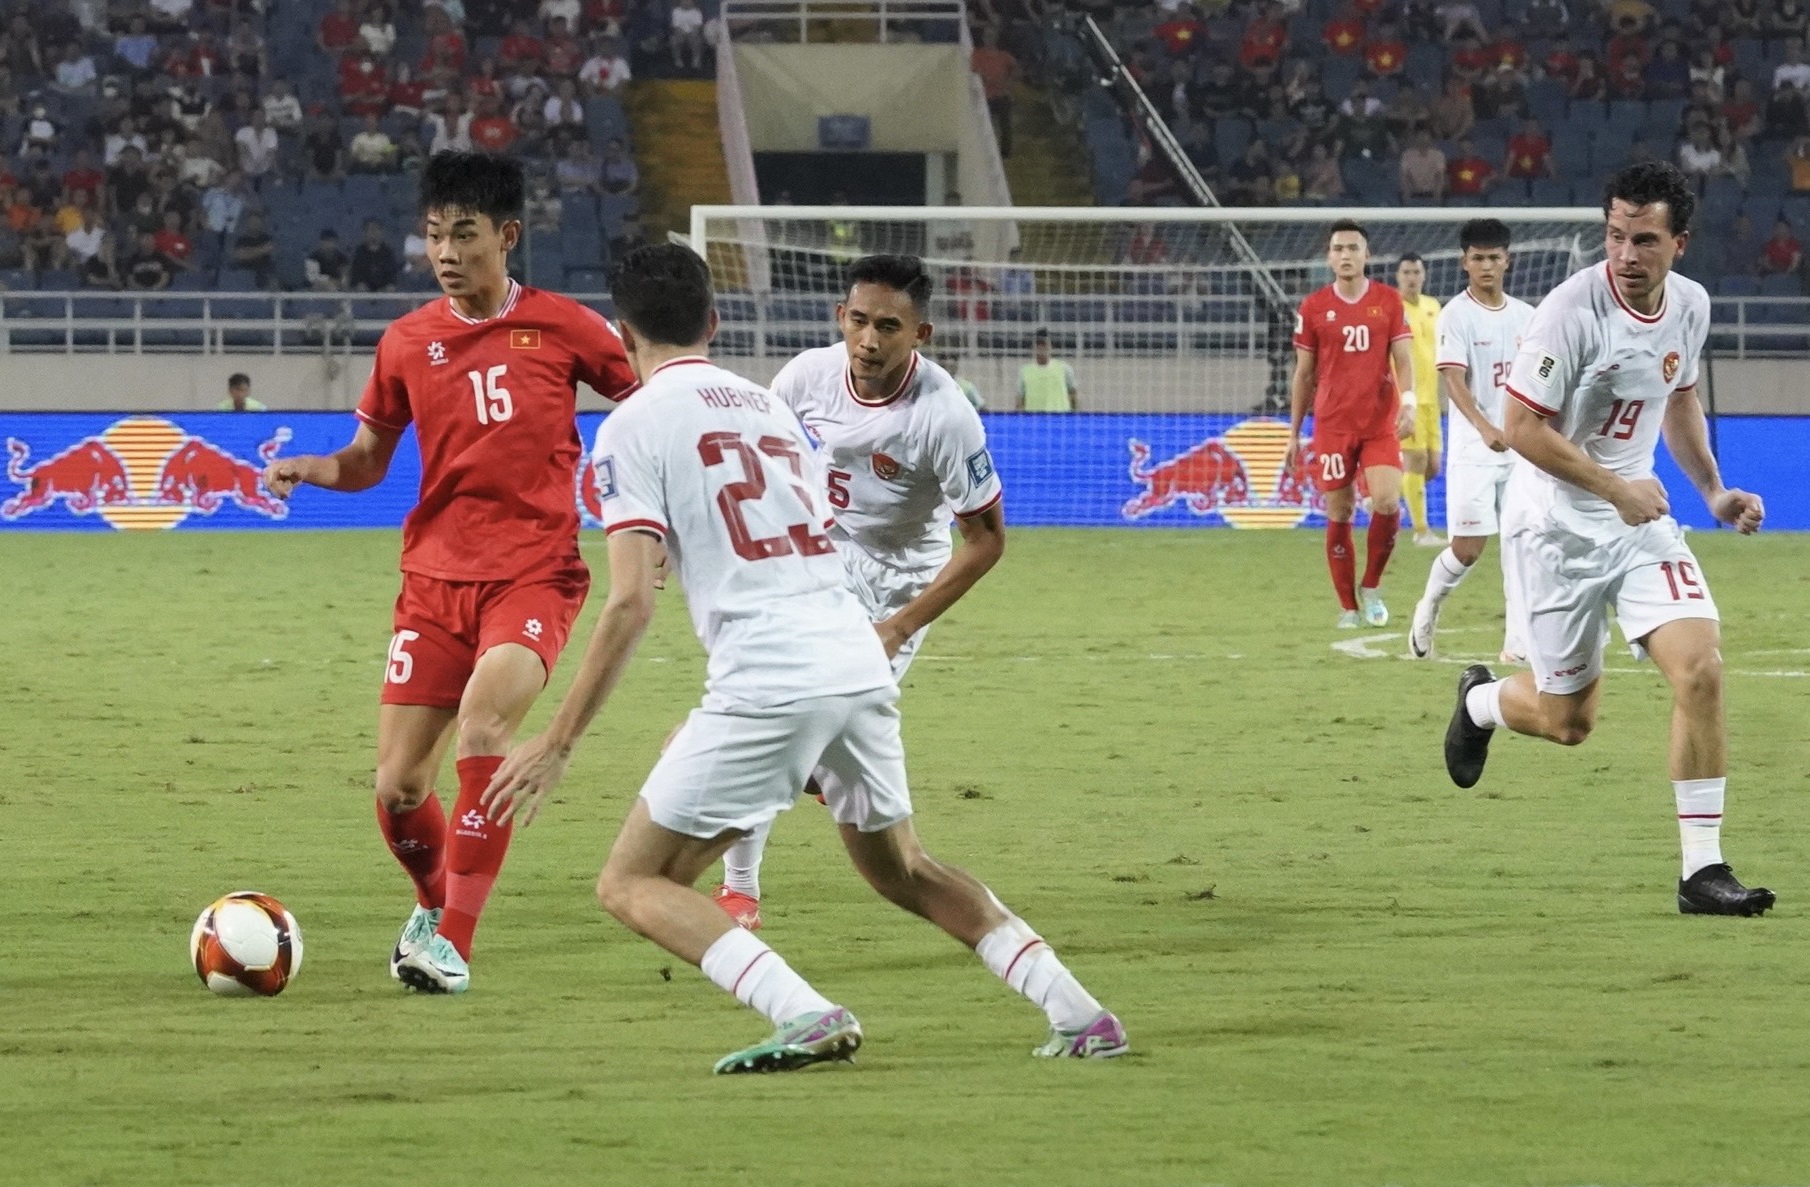 Trận thua thảm bại của Đội tuyển Việt Nam trước Indonesia tối 26/3 khiến người hâm mộ thất vọng nặng nề